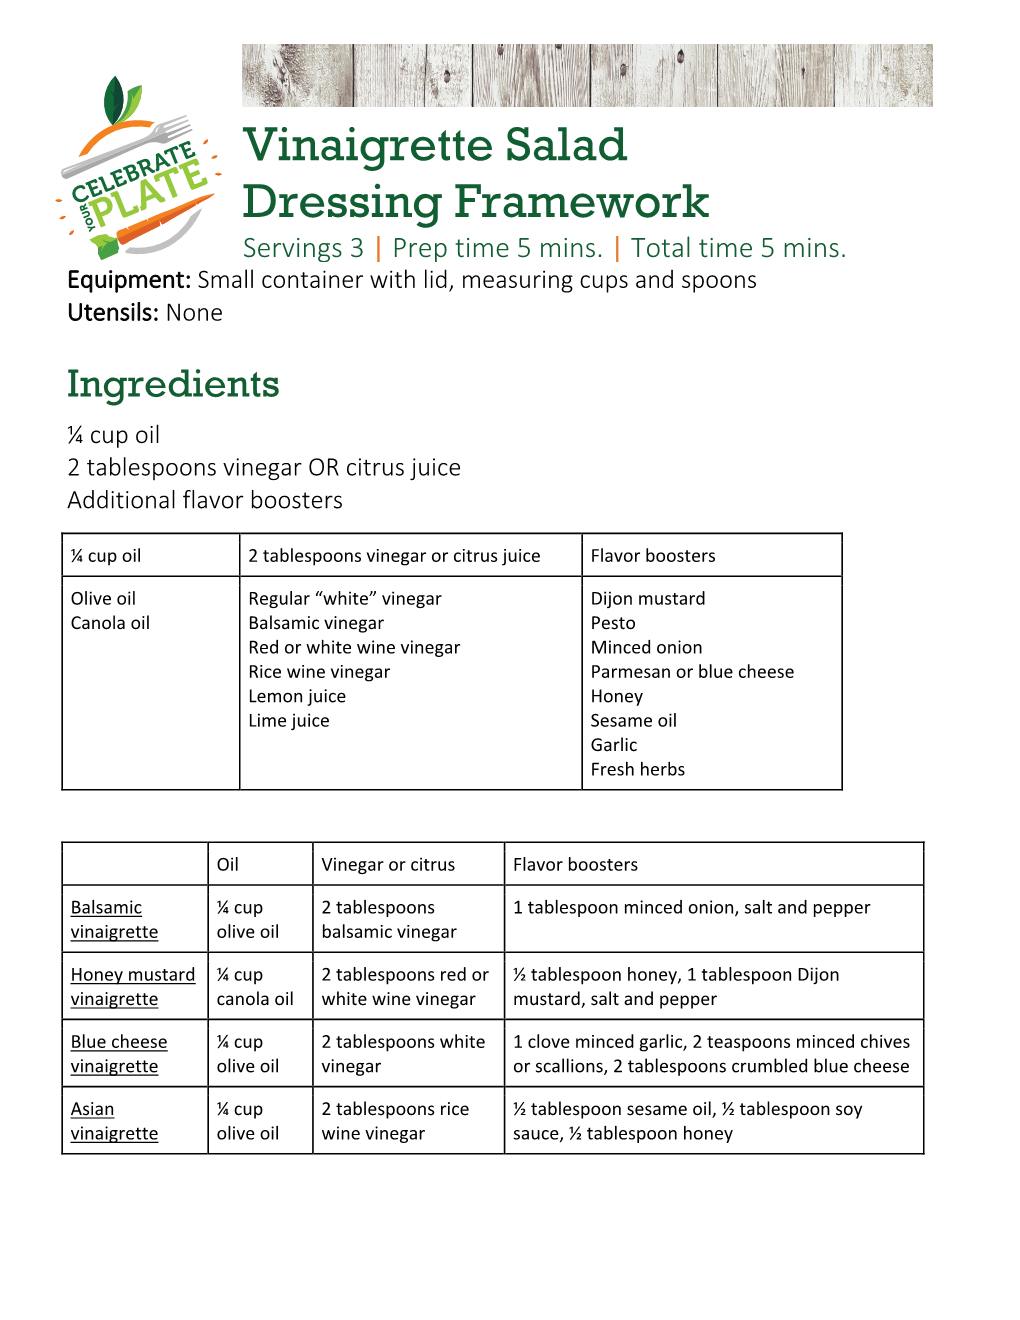 Vinaigrette Salad Dressing Framework